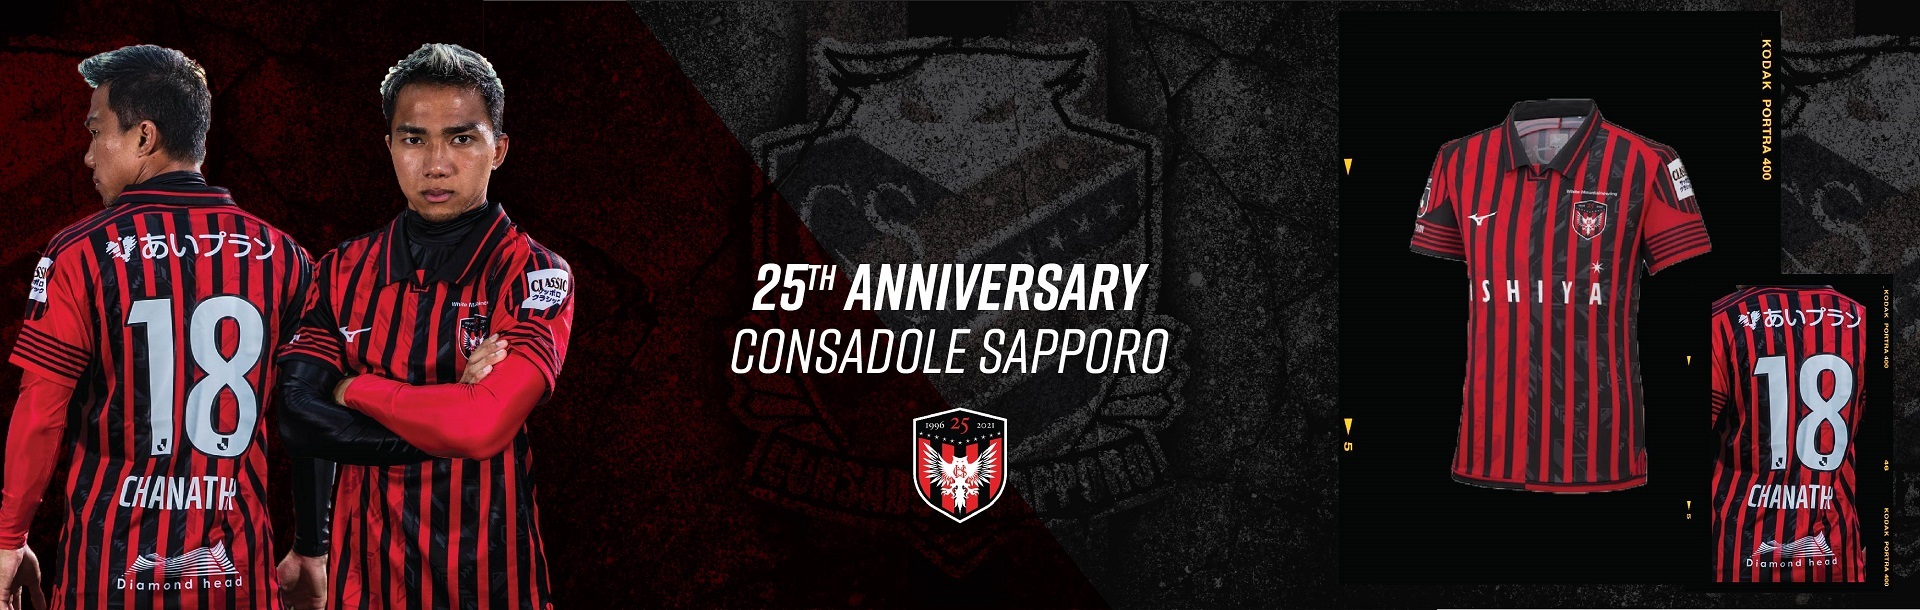 Consadole Sapporo 25th Anniversary